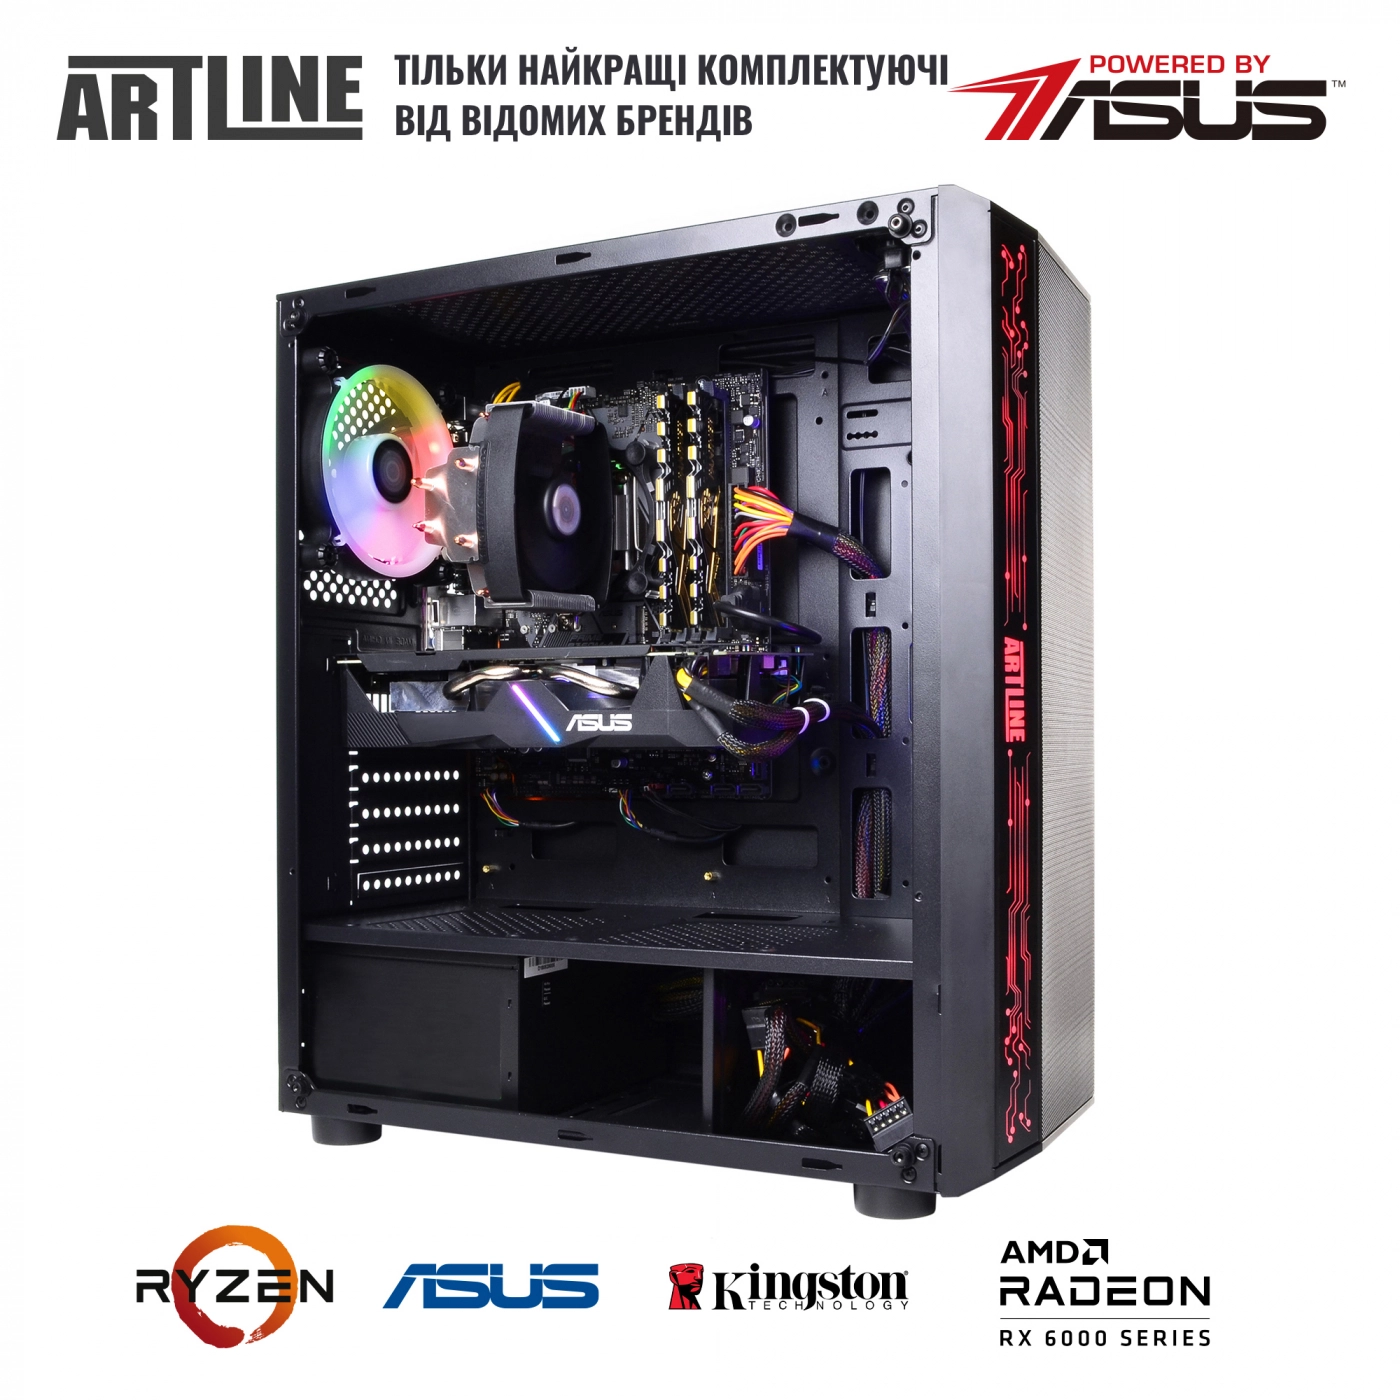 Купить Компьютер ARTLINE Gaming X48v41 - фото 5